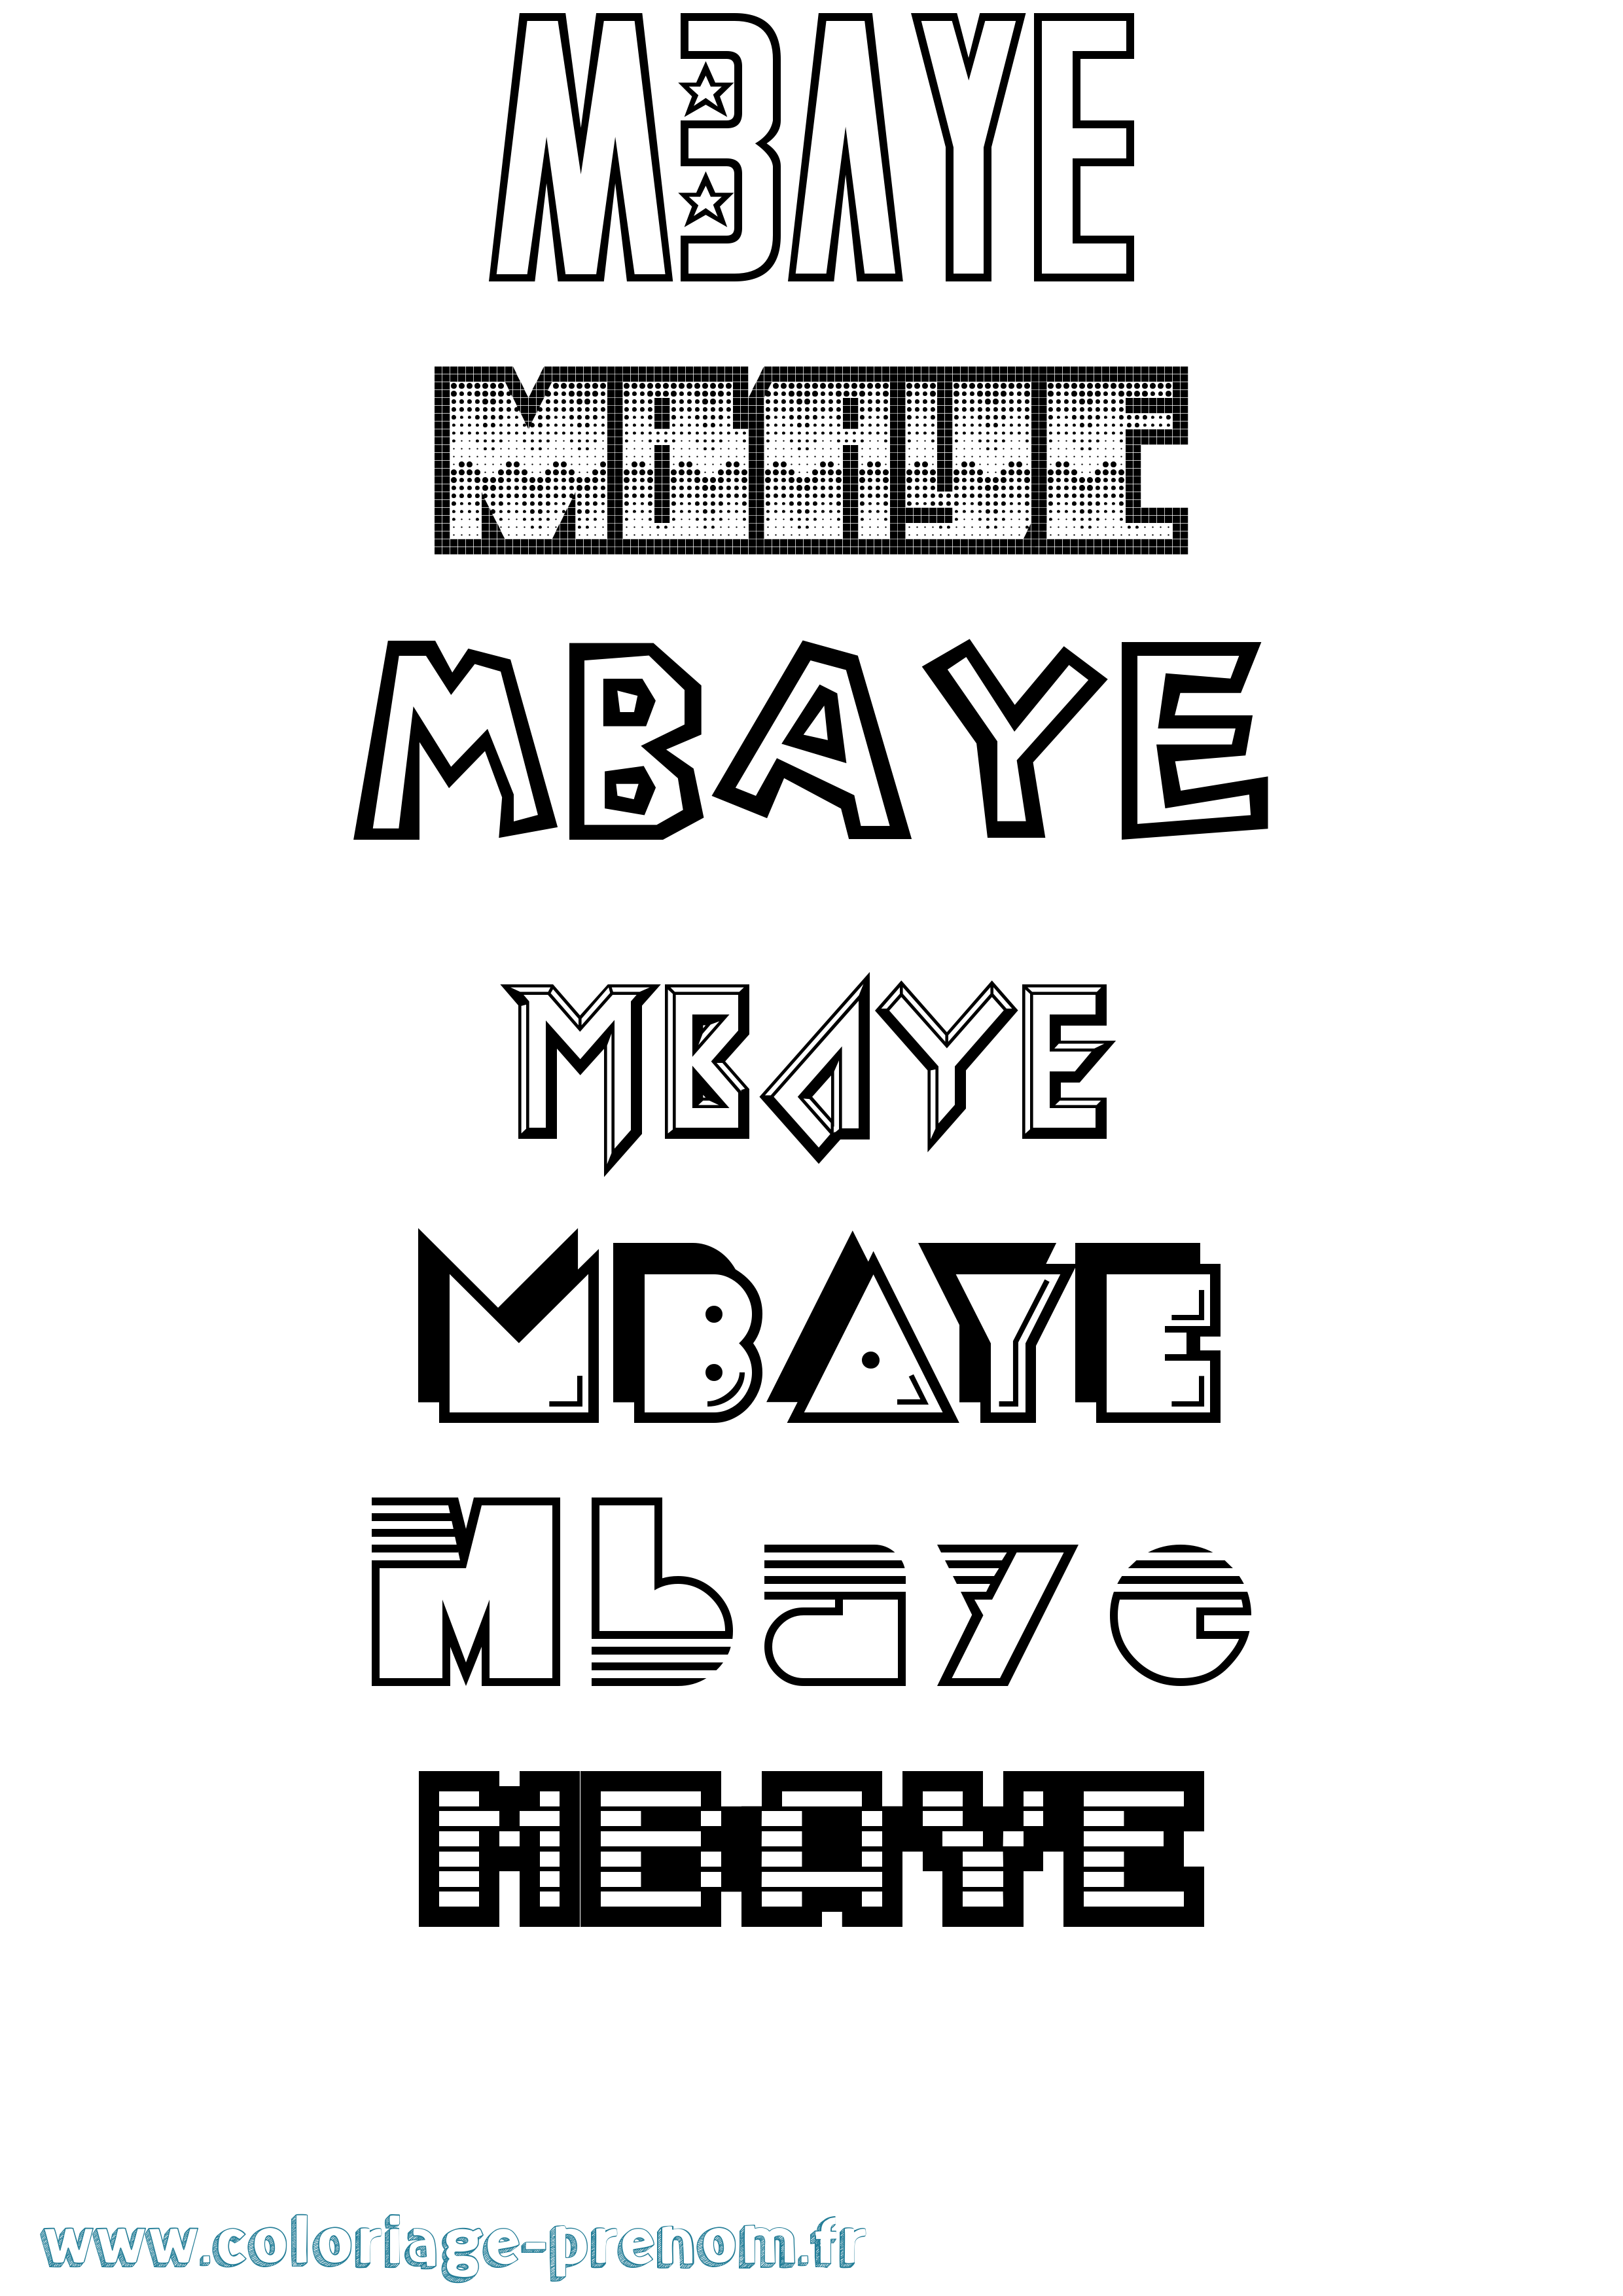 Coloriage prénom Mbaye Jeux Vidéos